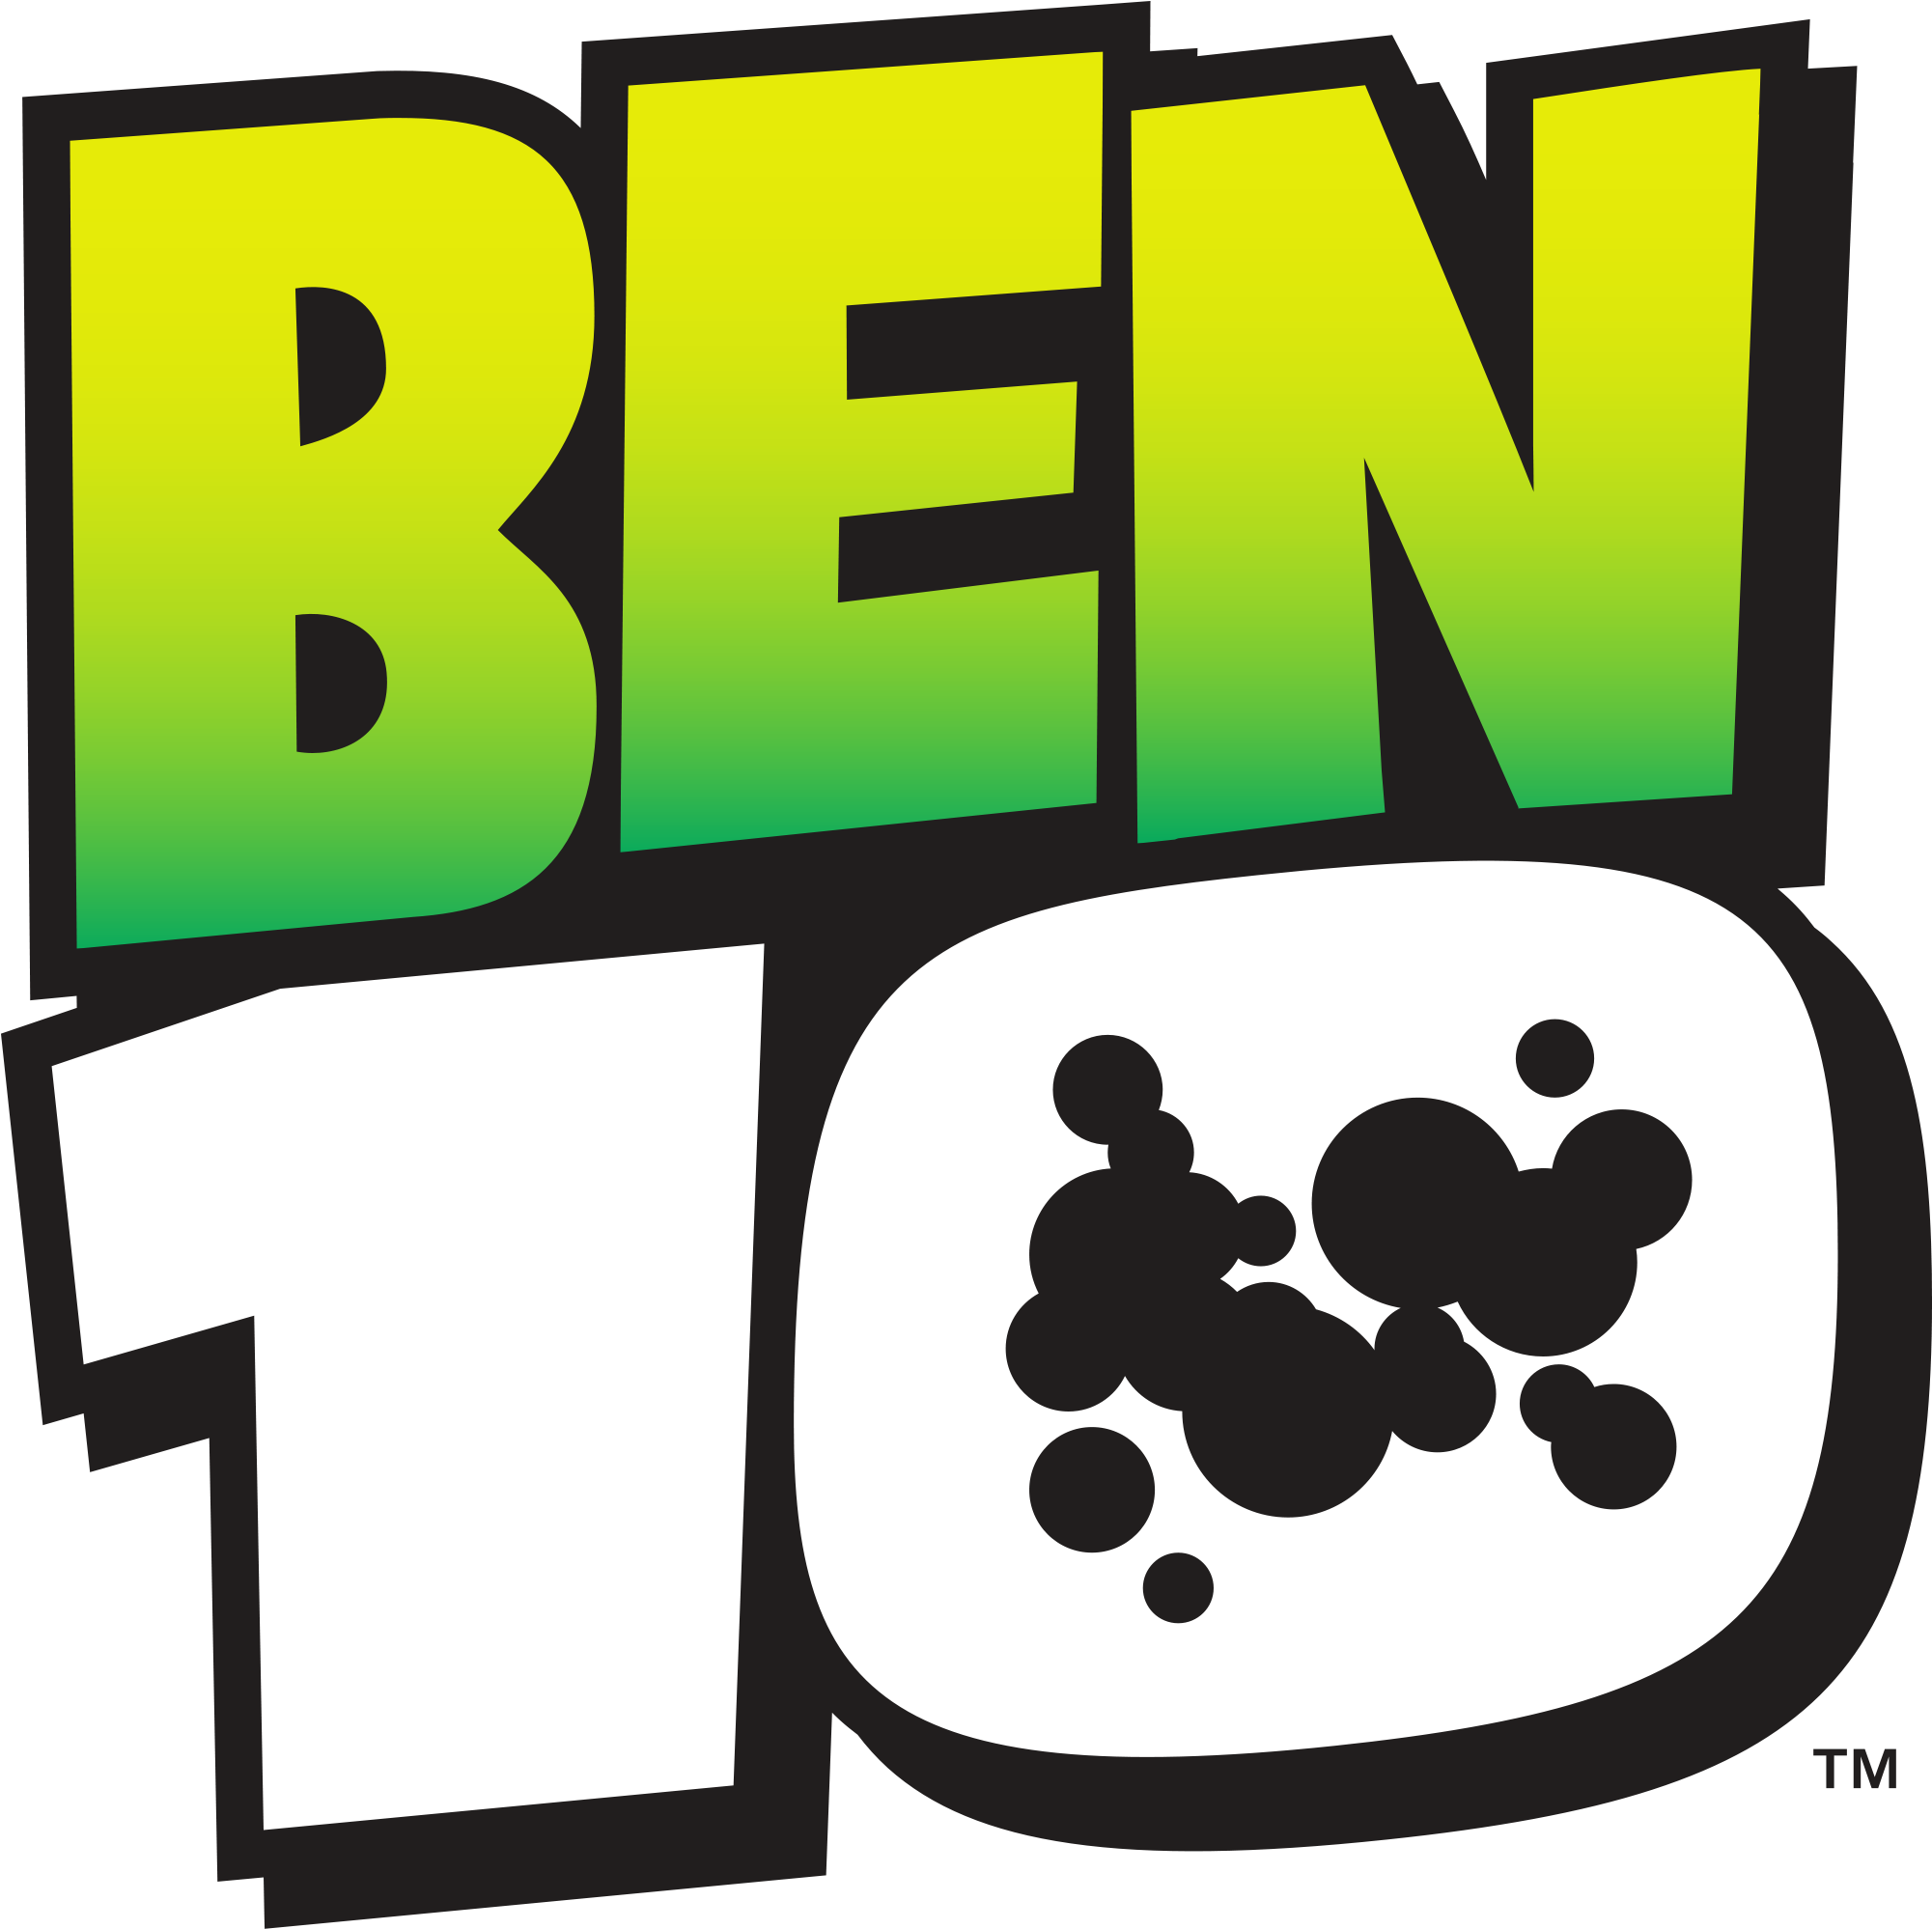 Ben10-logo - Ben 10 Logo (2000x2067), Png Download